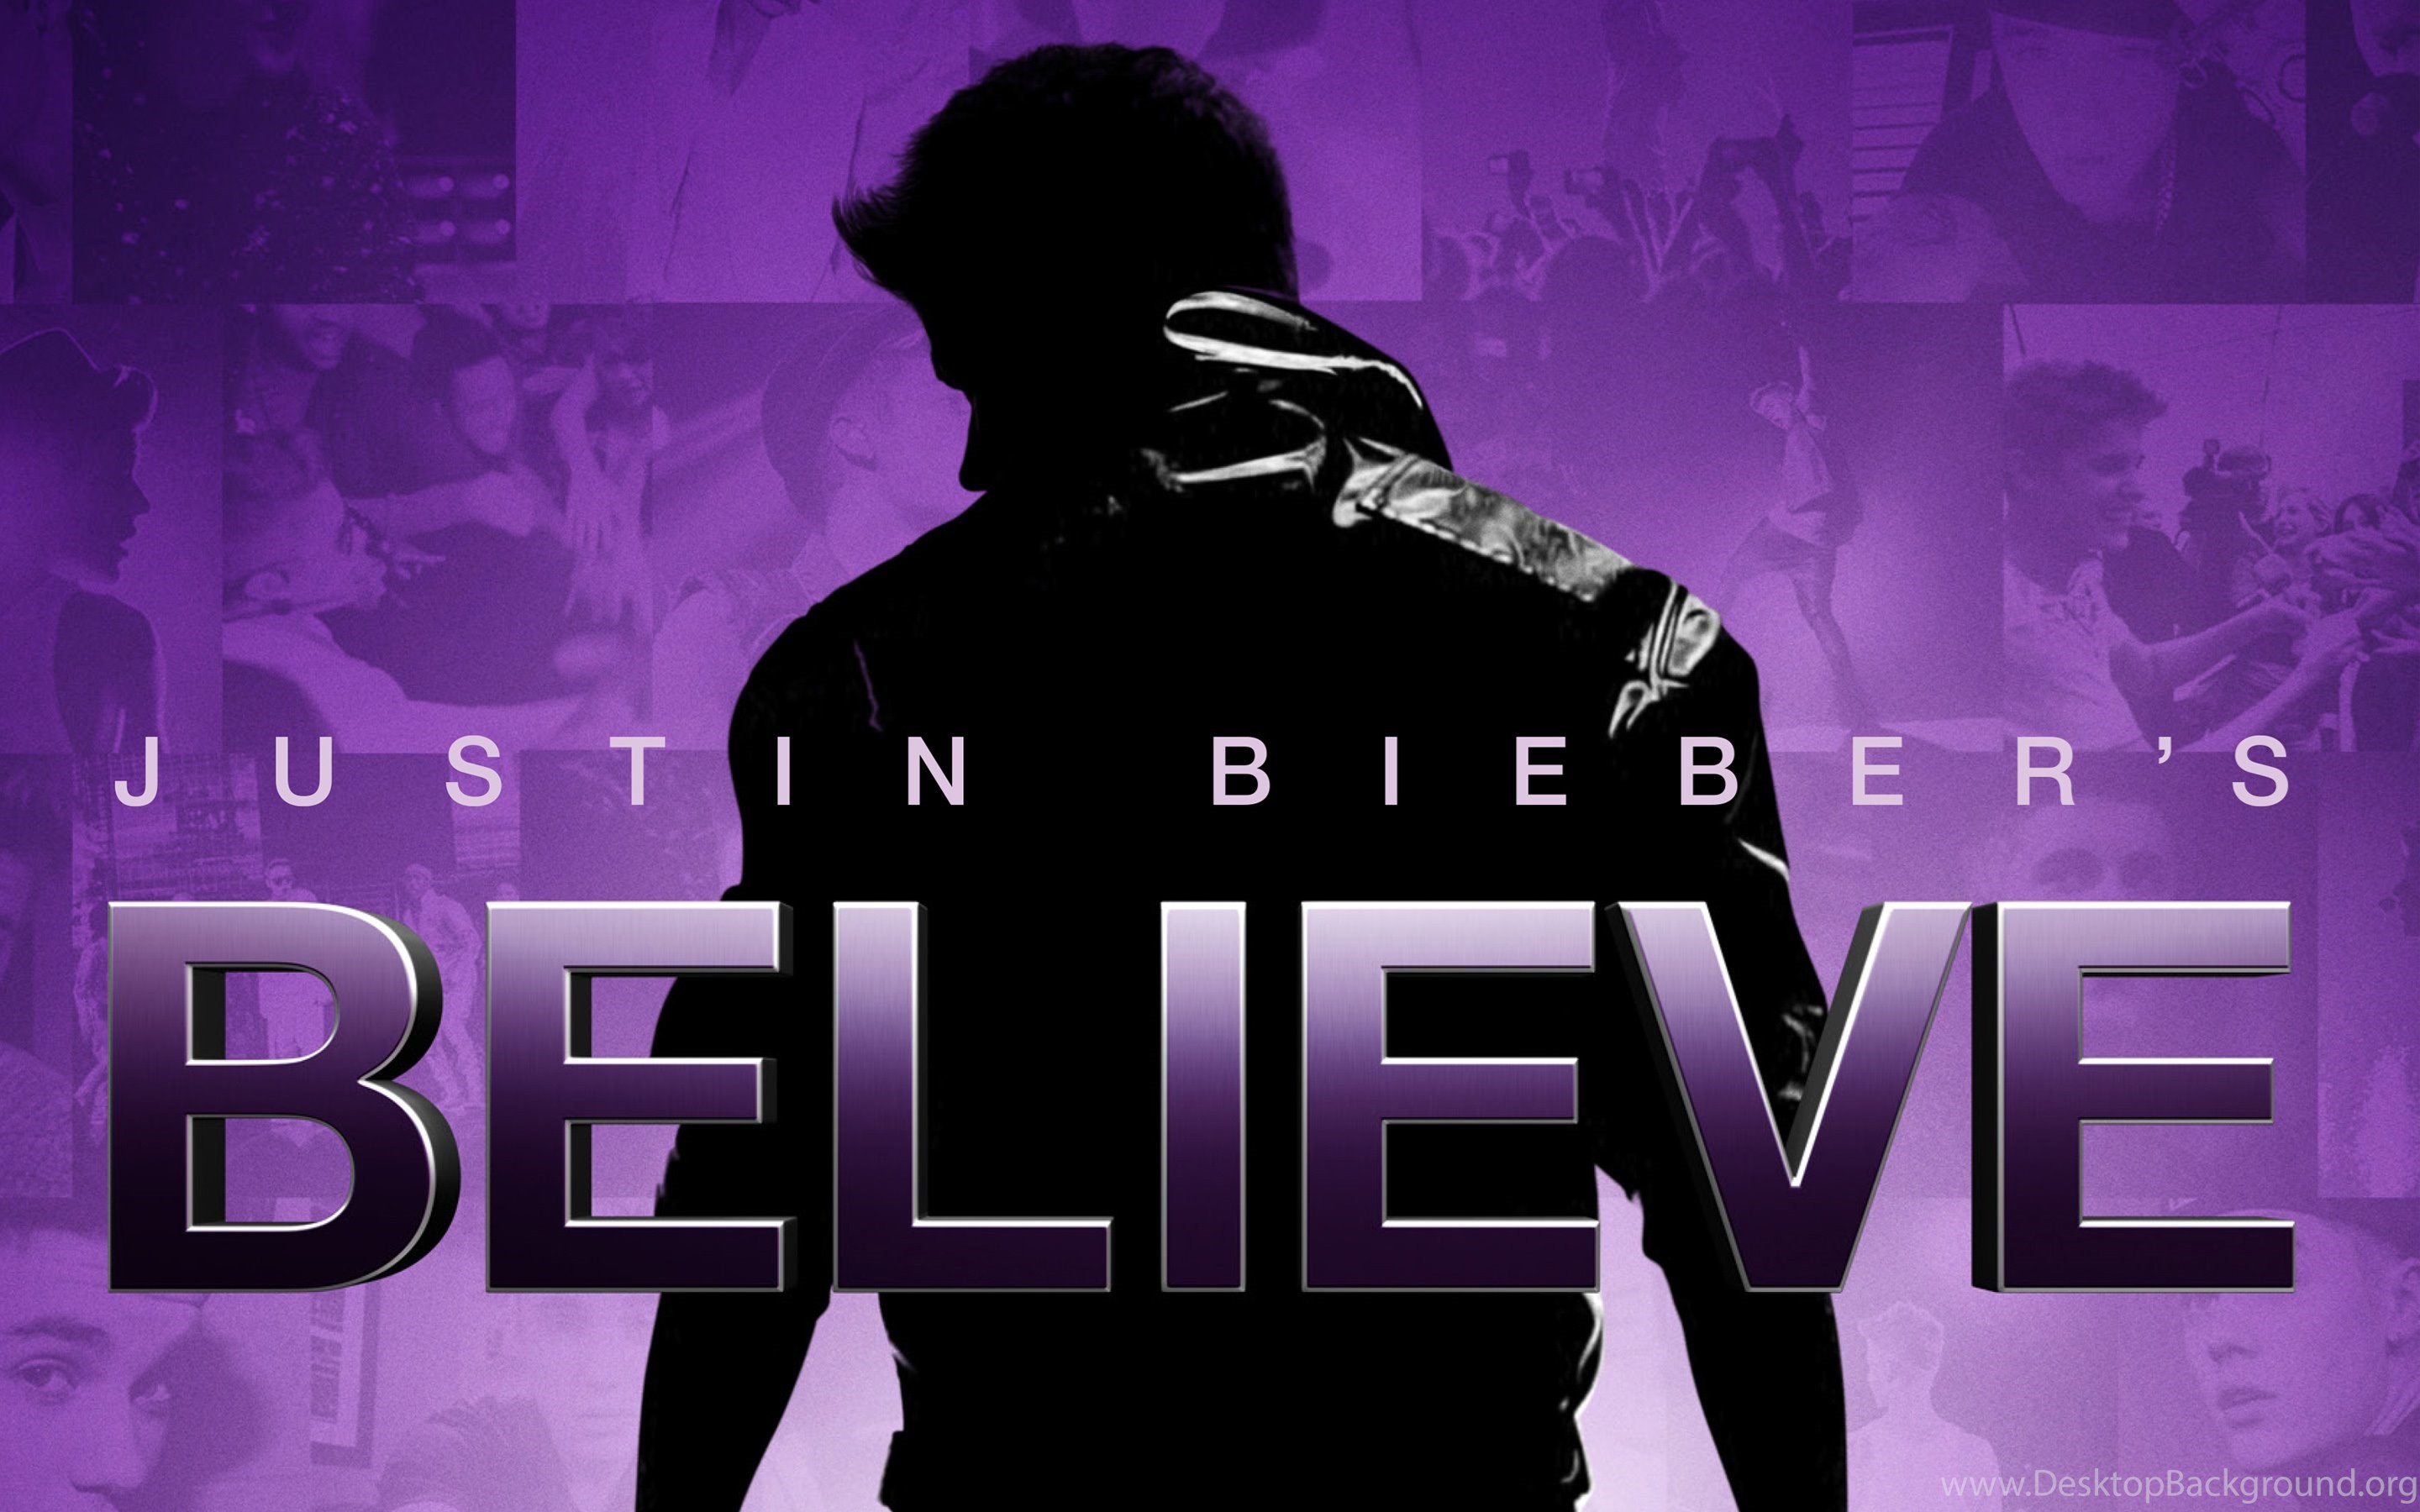 Justin Bieber's Believe 2013 Wallpaper Desktop Background